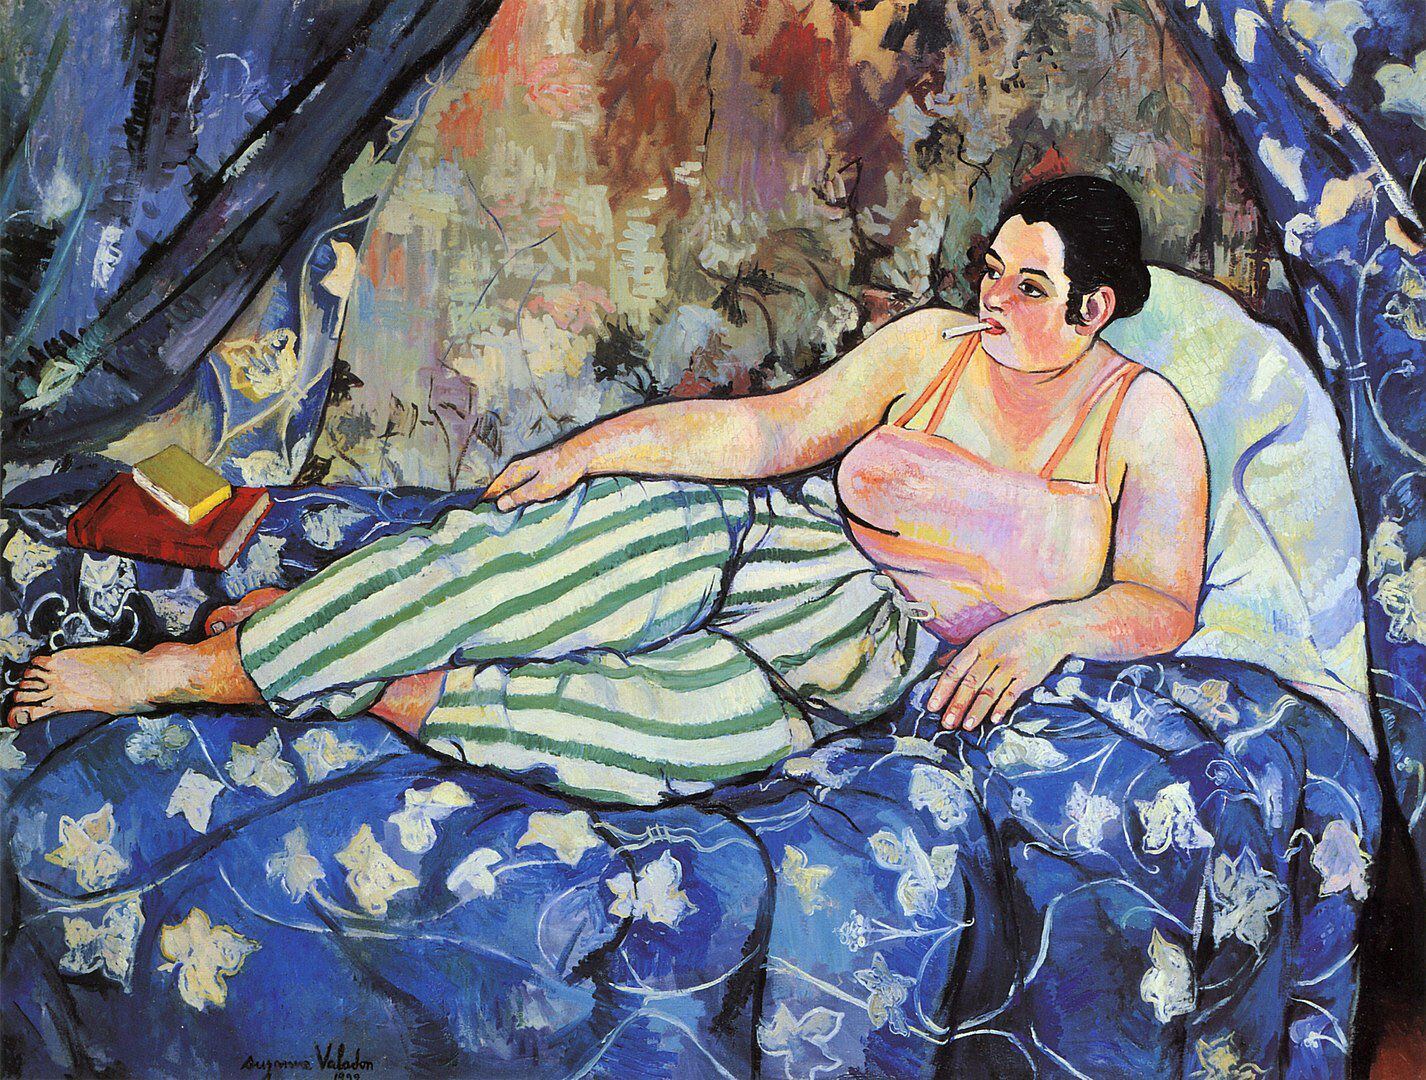 쉬잔 발라동, 파란 방, 1923년, 캔버스에 유채, 90×116cm, 파리 국립근대미술관 소장.